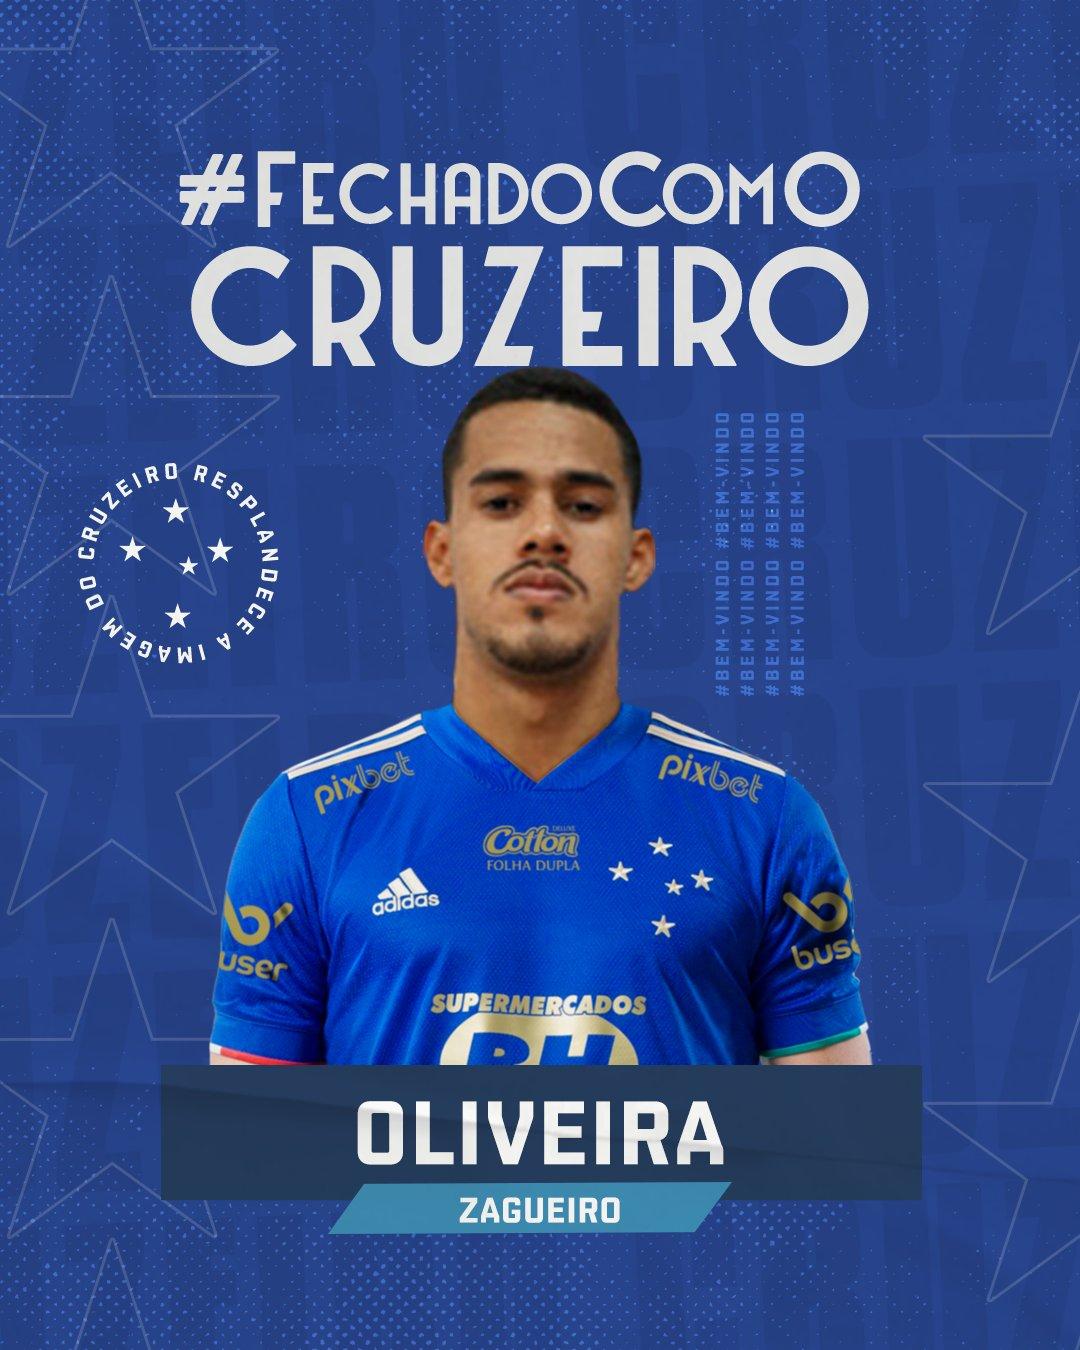 Oliveira, de 26 anos, defendia o Atlético-GO (Cruzeiro/Divulgação)